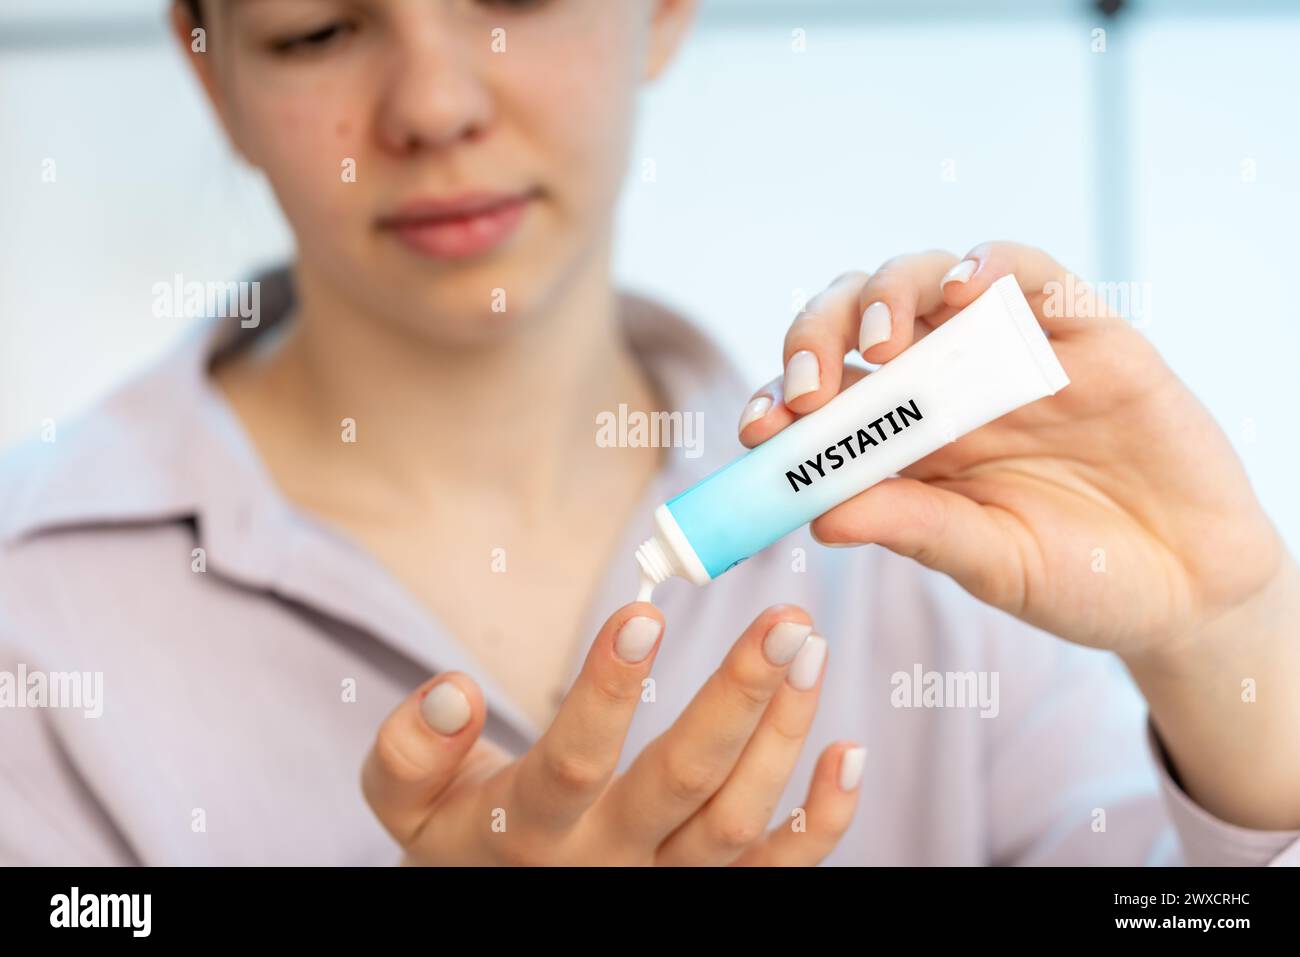 Nystatin-medizinische Creme, konzeptuelles Bild. Eine Kombinationscreme zur Behandlung von Pilzinfektionen mit Entzündungen wie Candidiasis und Windelausschlag. Stockfoto